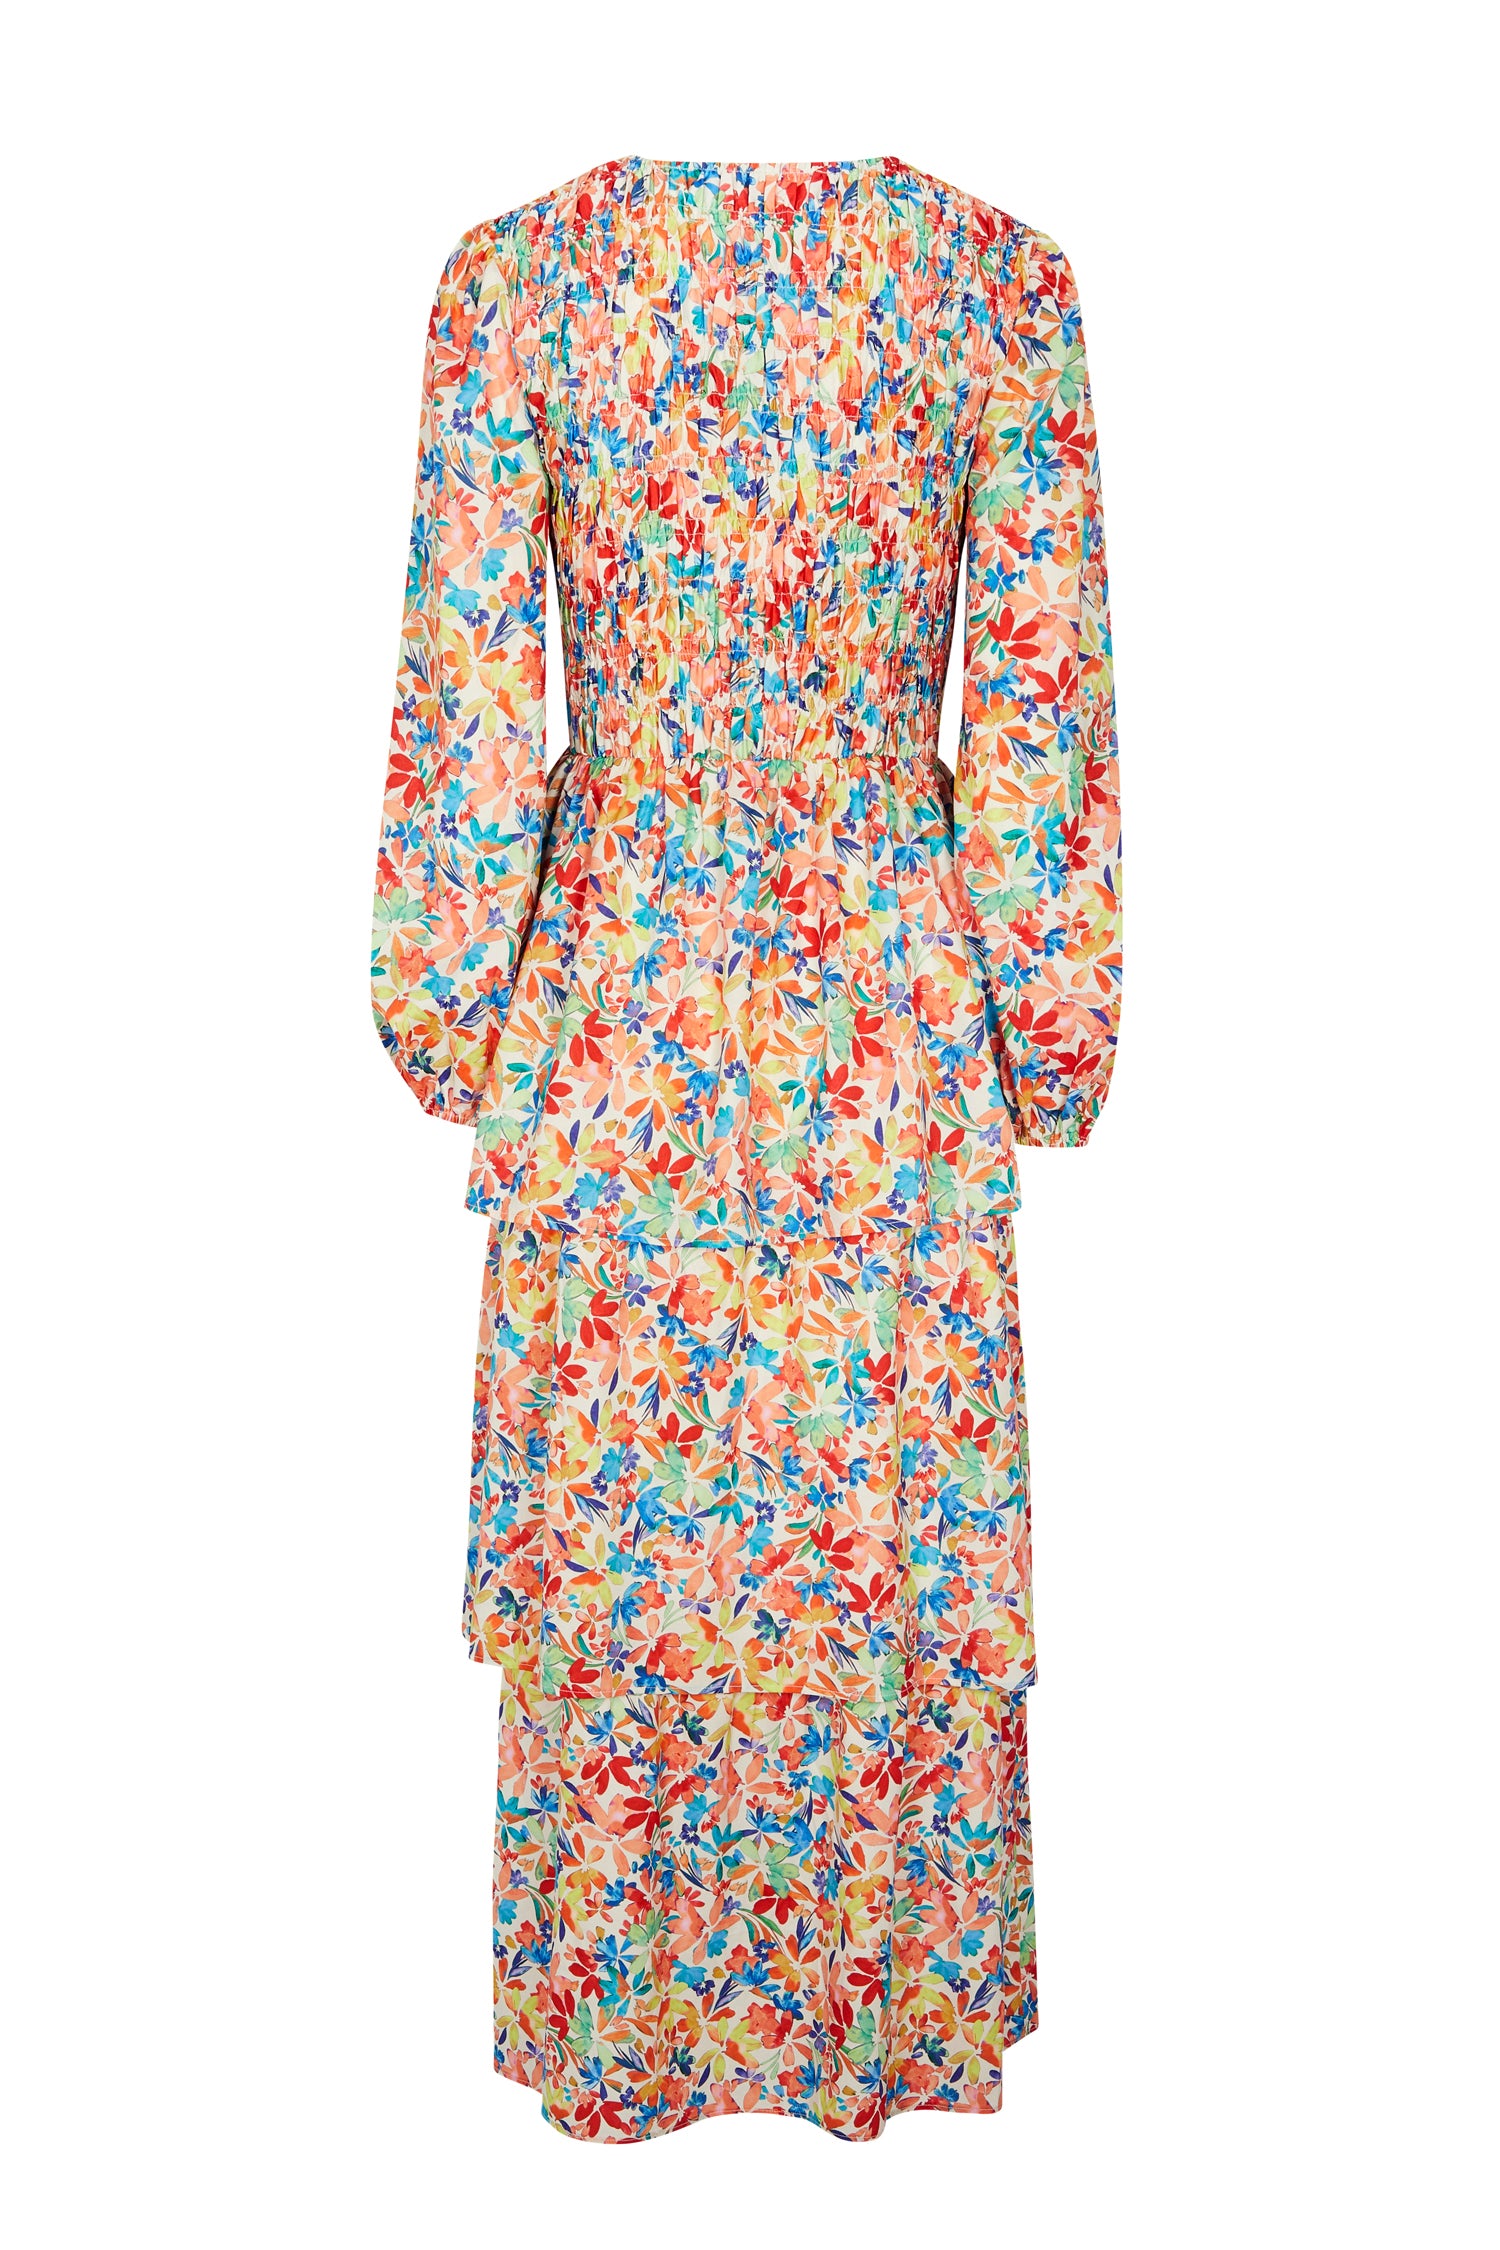 Floral Lisa Dress – Never Fully Dressed